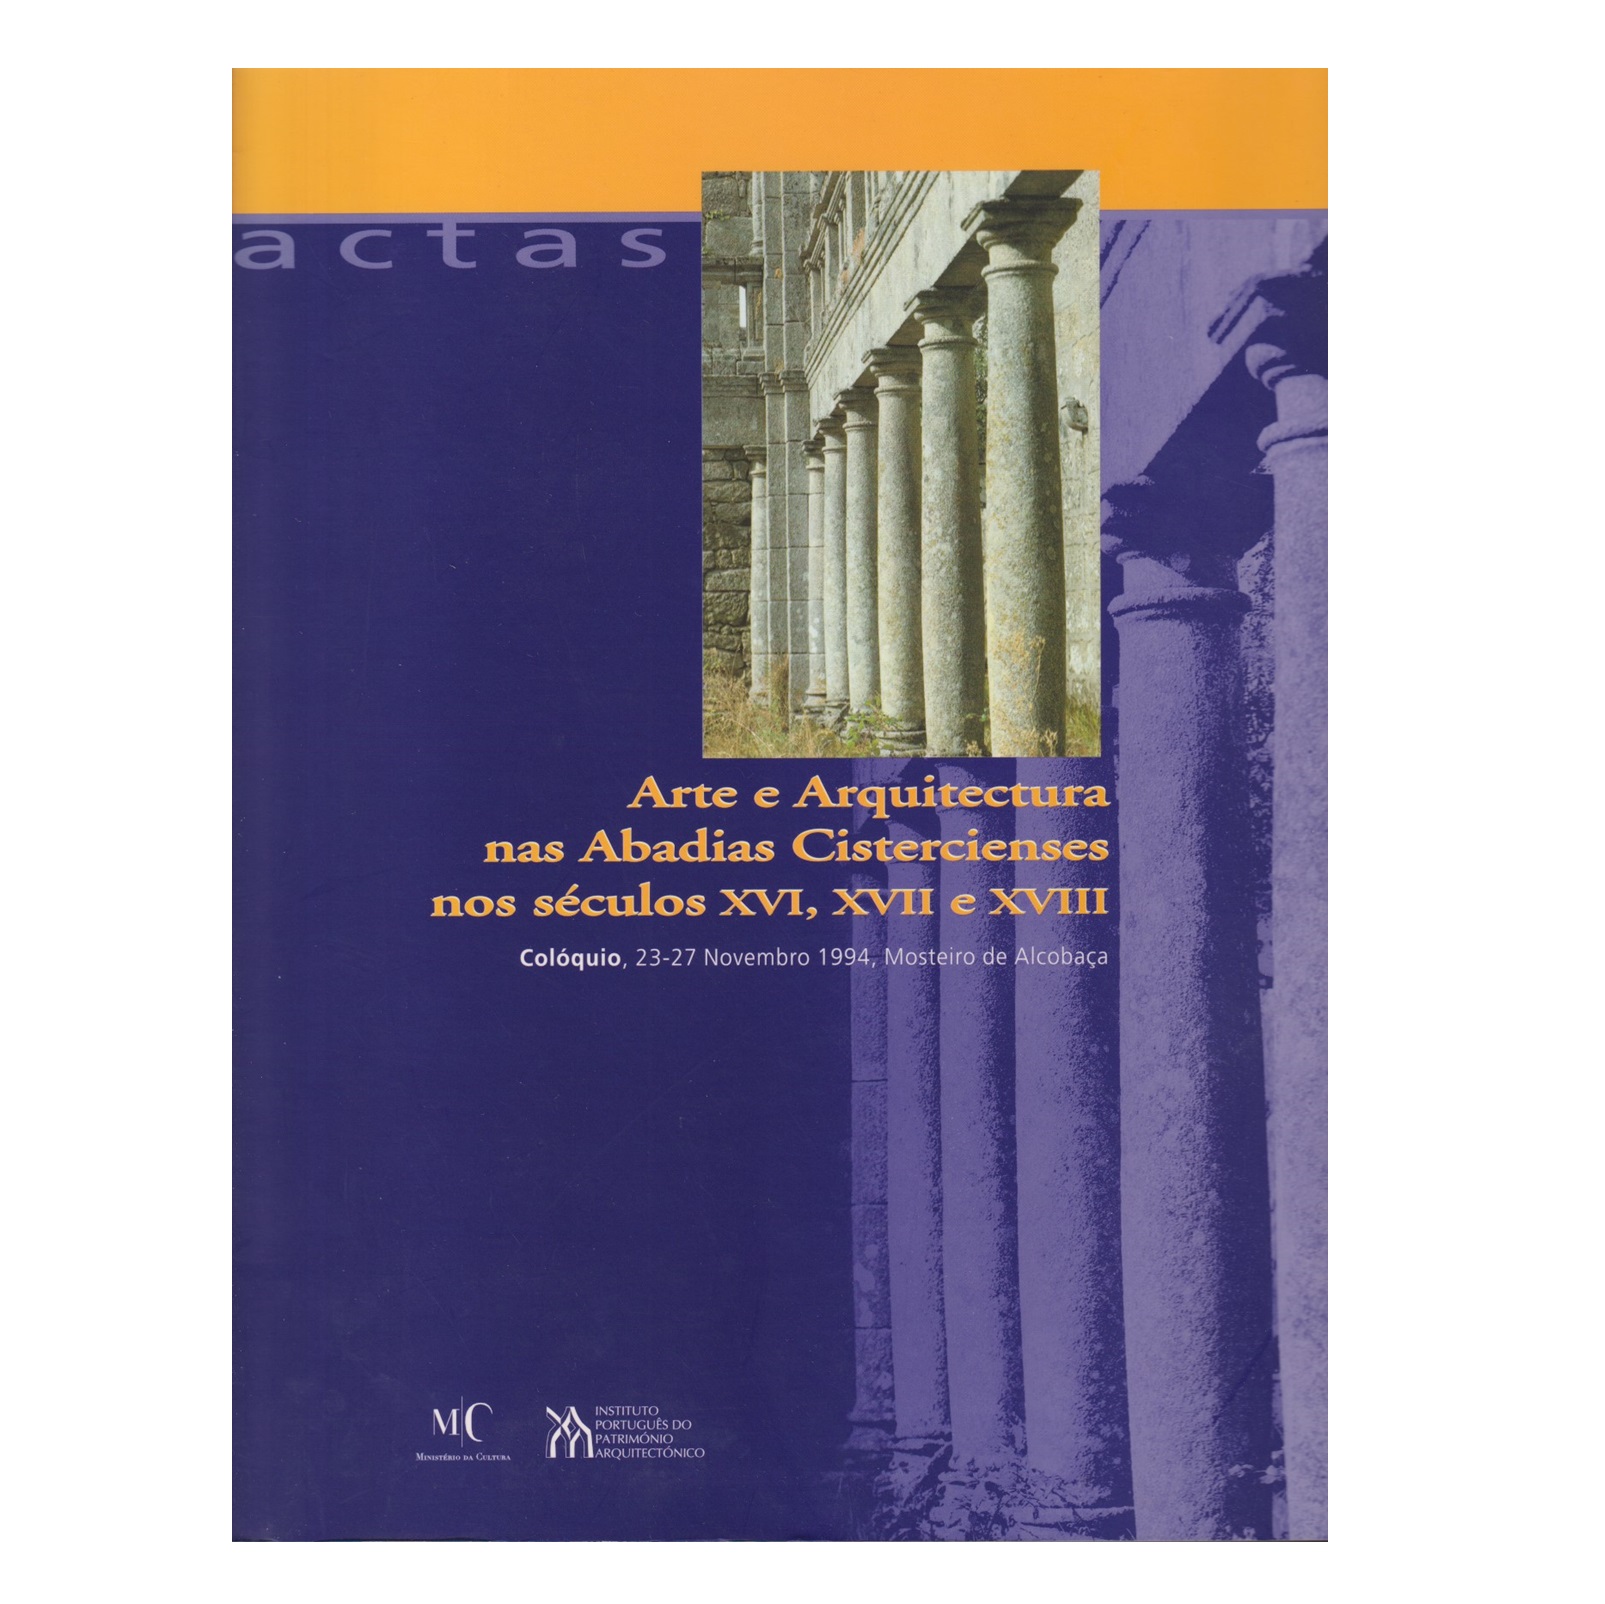 ARTE E ARQUITECTURA NAS ABADIAS CISTERCIENSES NOS SÉCULOS XVI, XVII E XVIII.